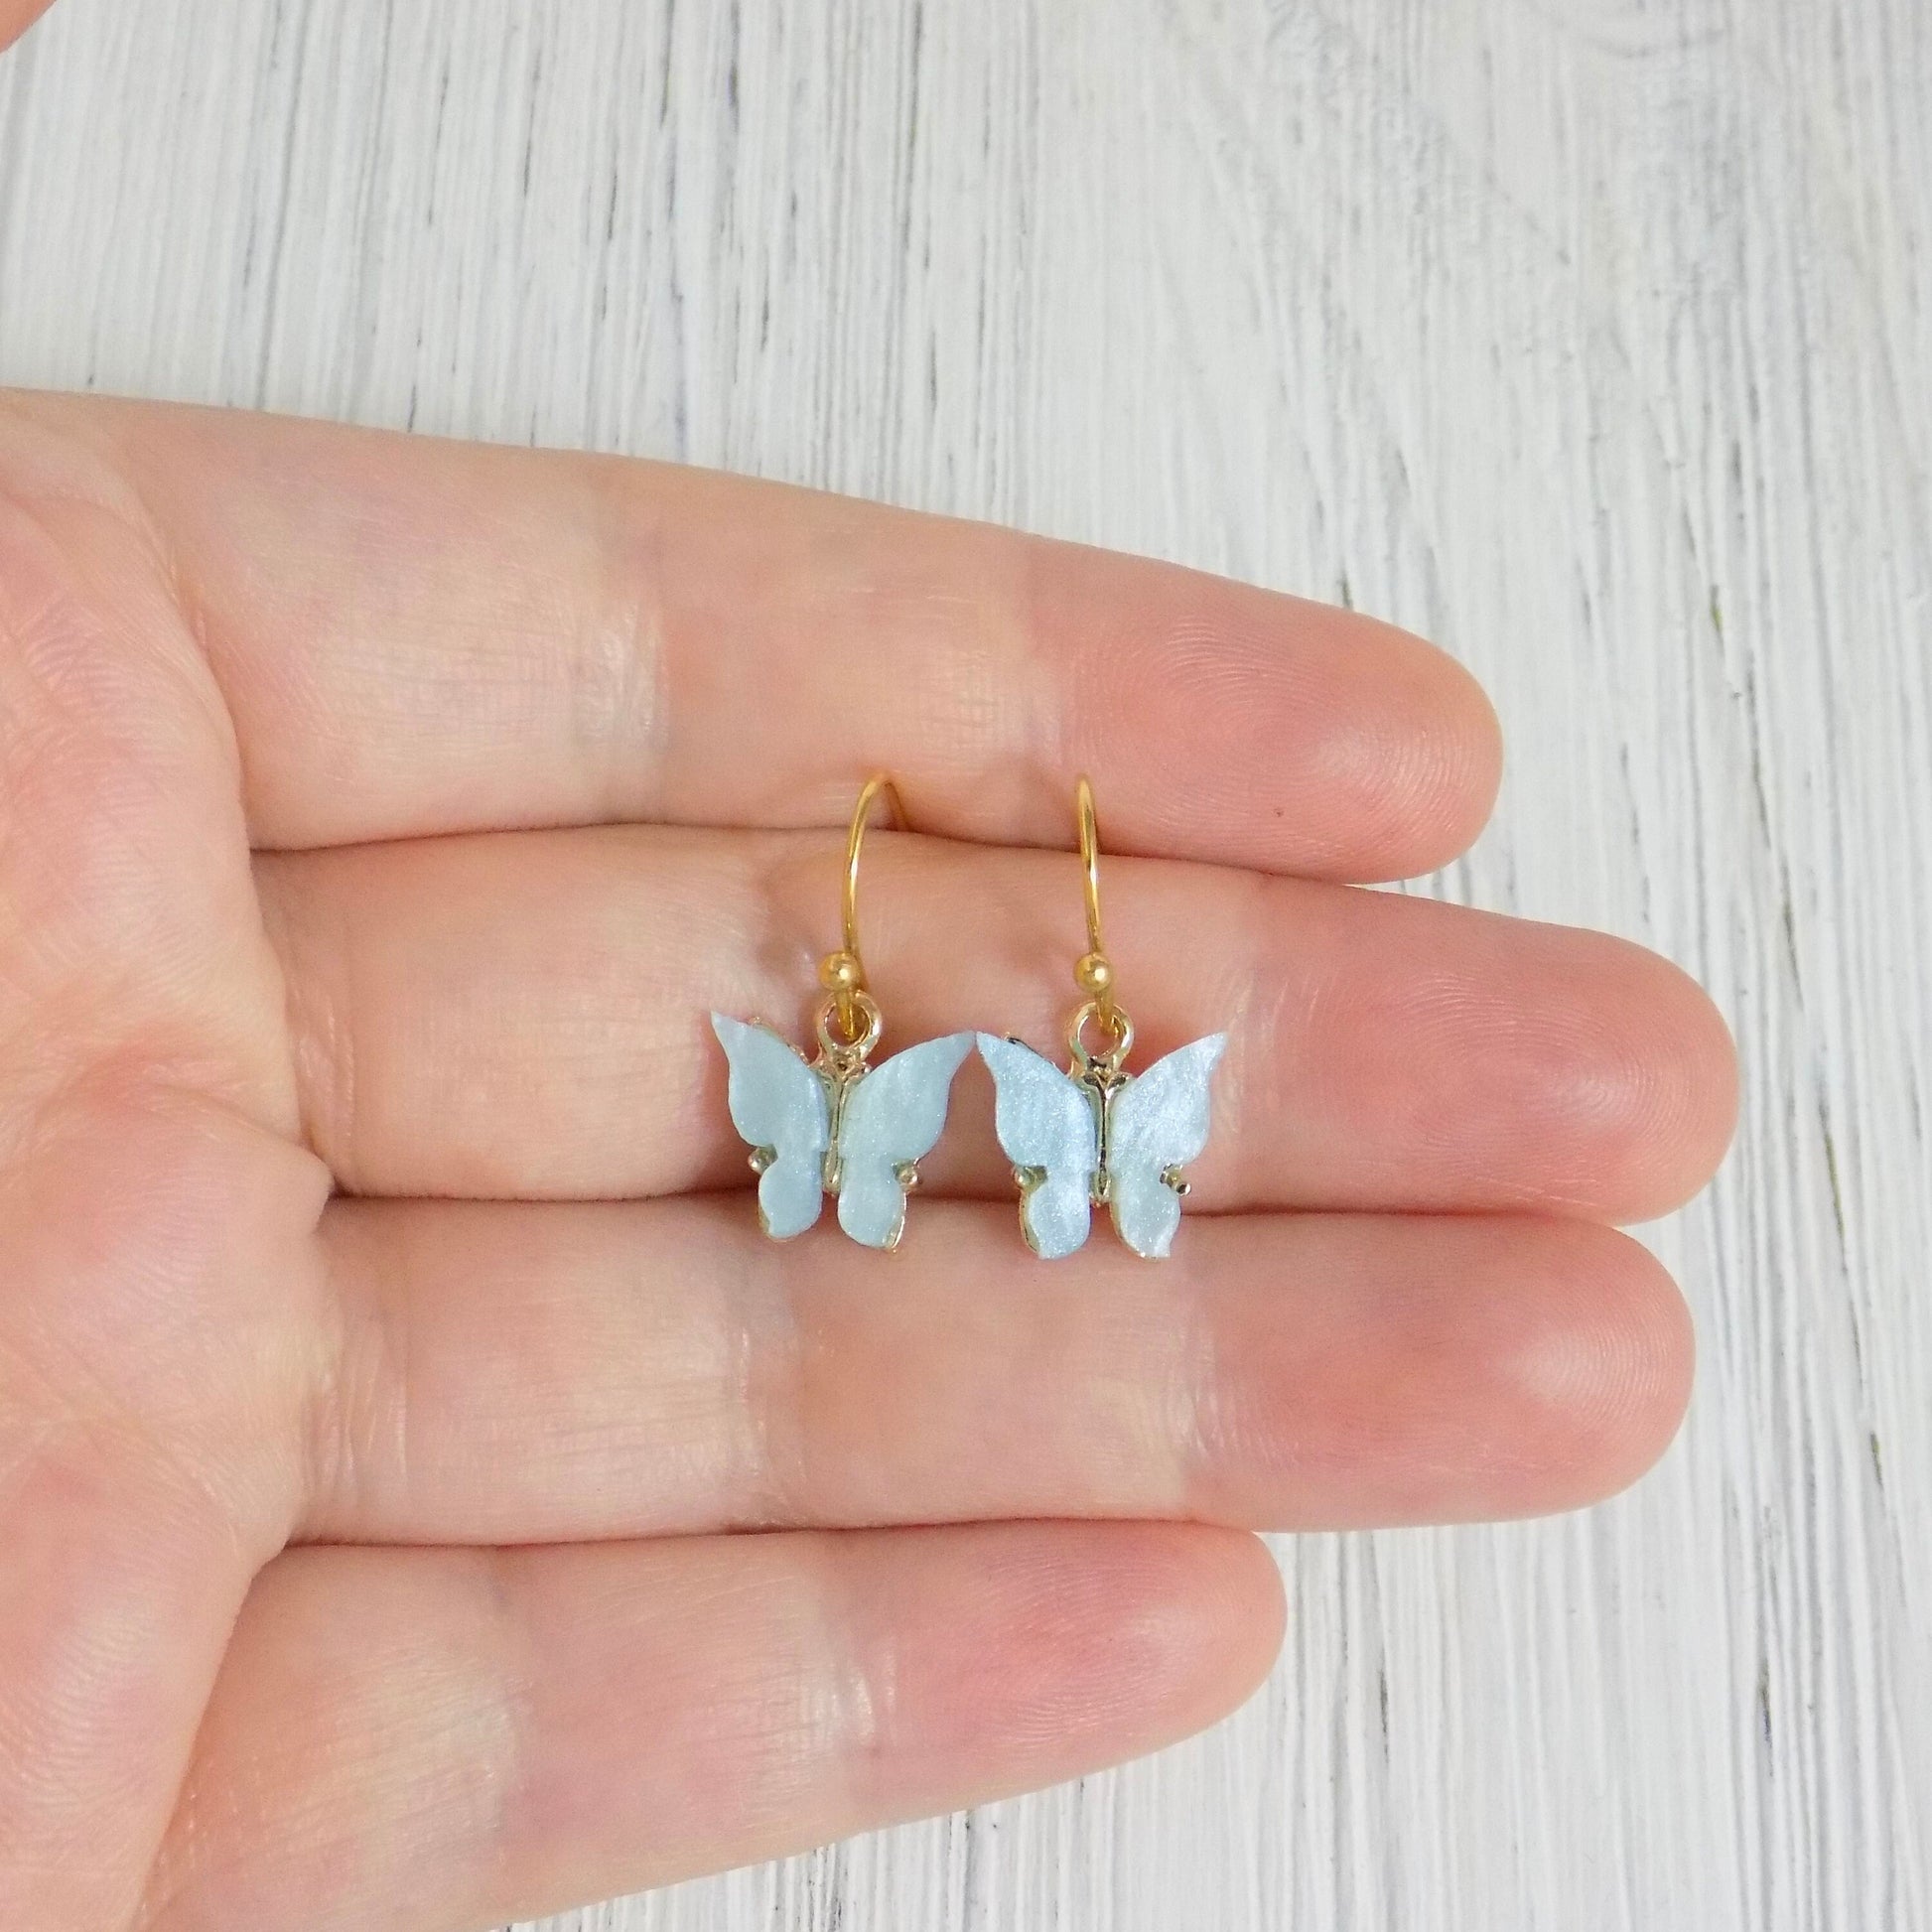 Gold Butterfly Earrings - Minimalist Butterfly